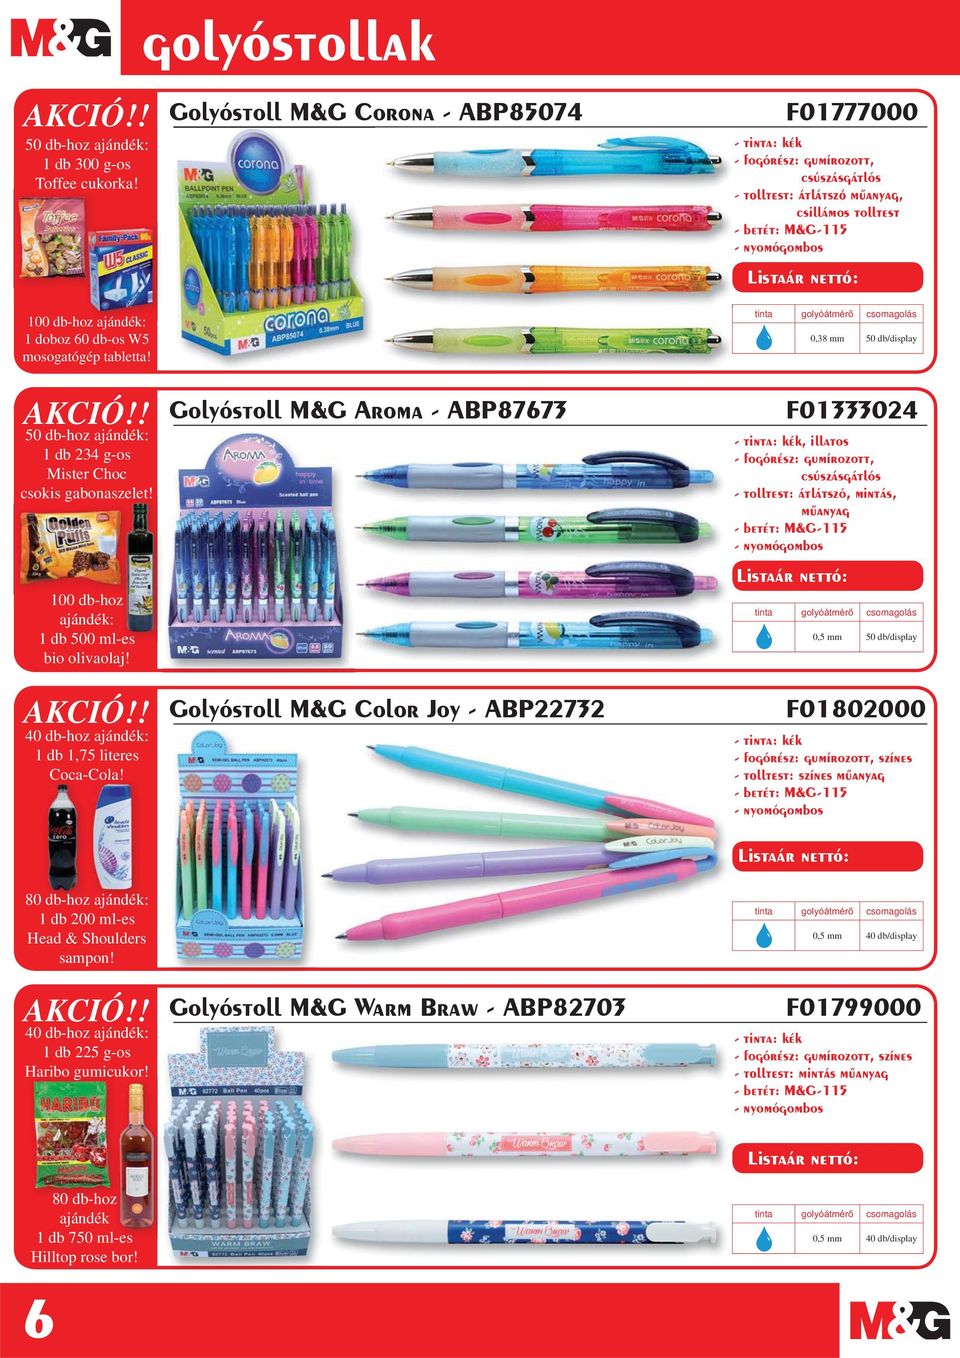 Golyóstoll M&G Aroma - ABP87673 Golyóstoll M&G Color Joy - ABP22732 F01333024, illatos, csúszásgátlós - tolltest: átlátszó, mintás, - betét: M&G-115 tinta 0,5 mm 50 db/display F01802000, színes -